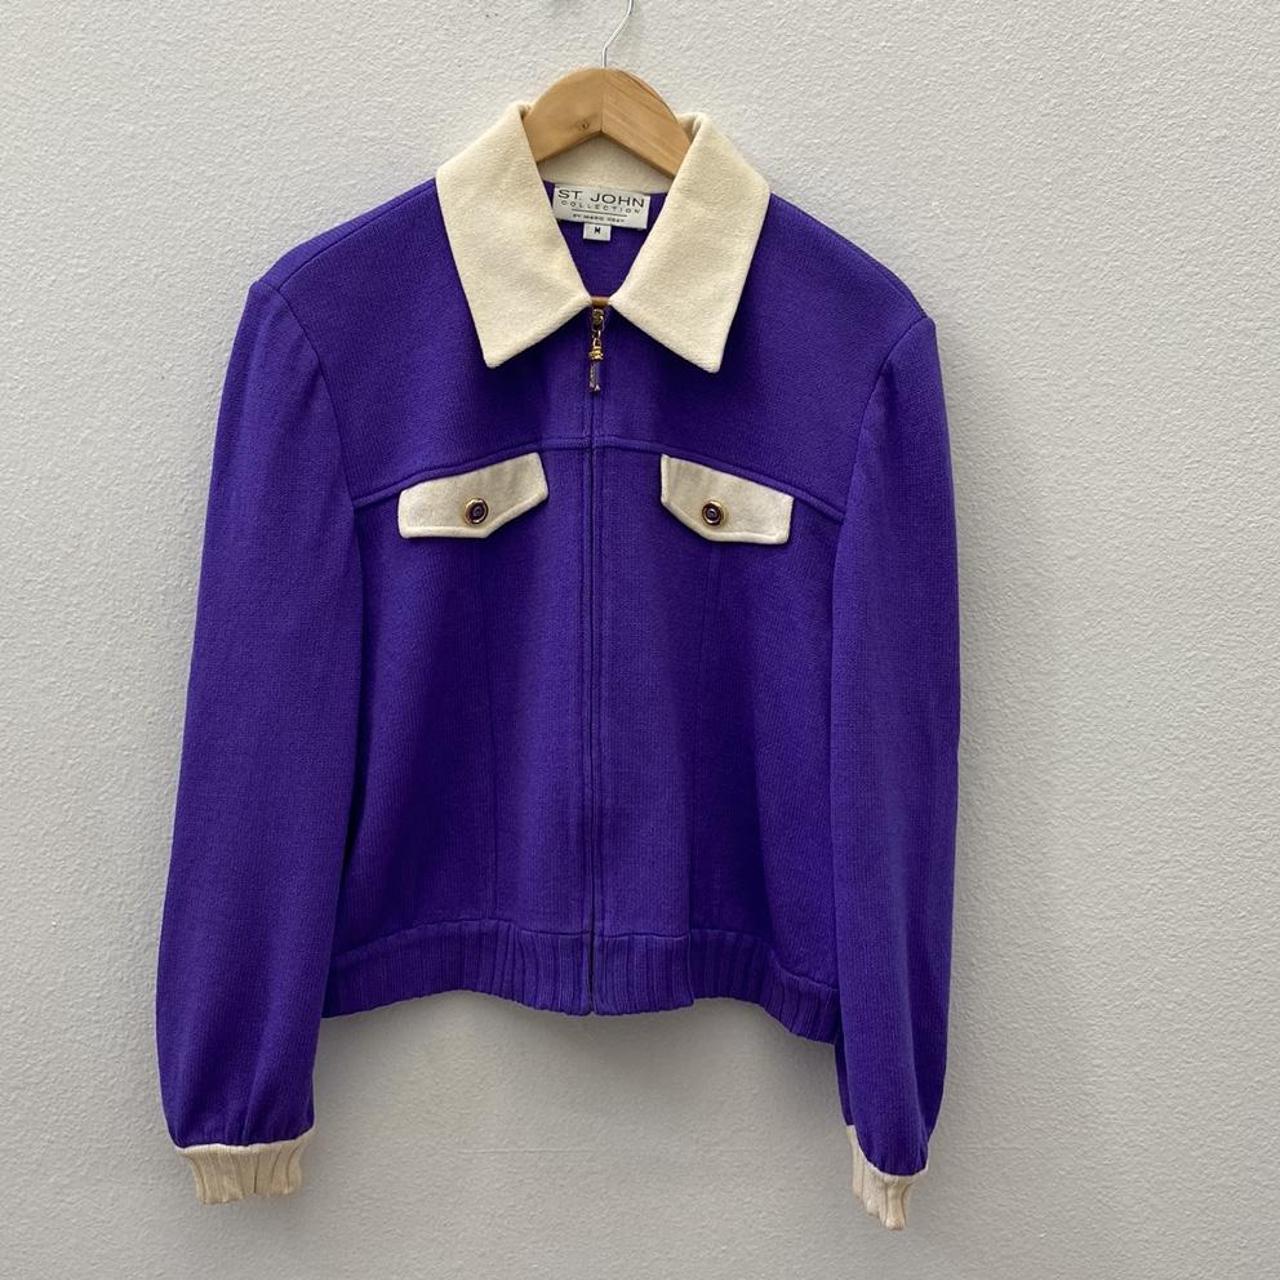 VINTAGE ST.JOHN purple knit sweater jacket Size... - Depop